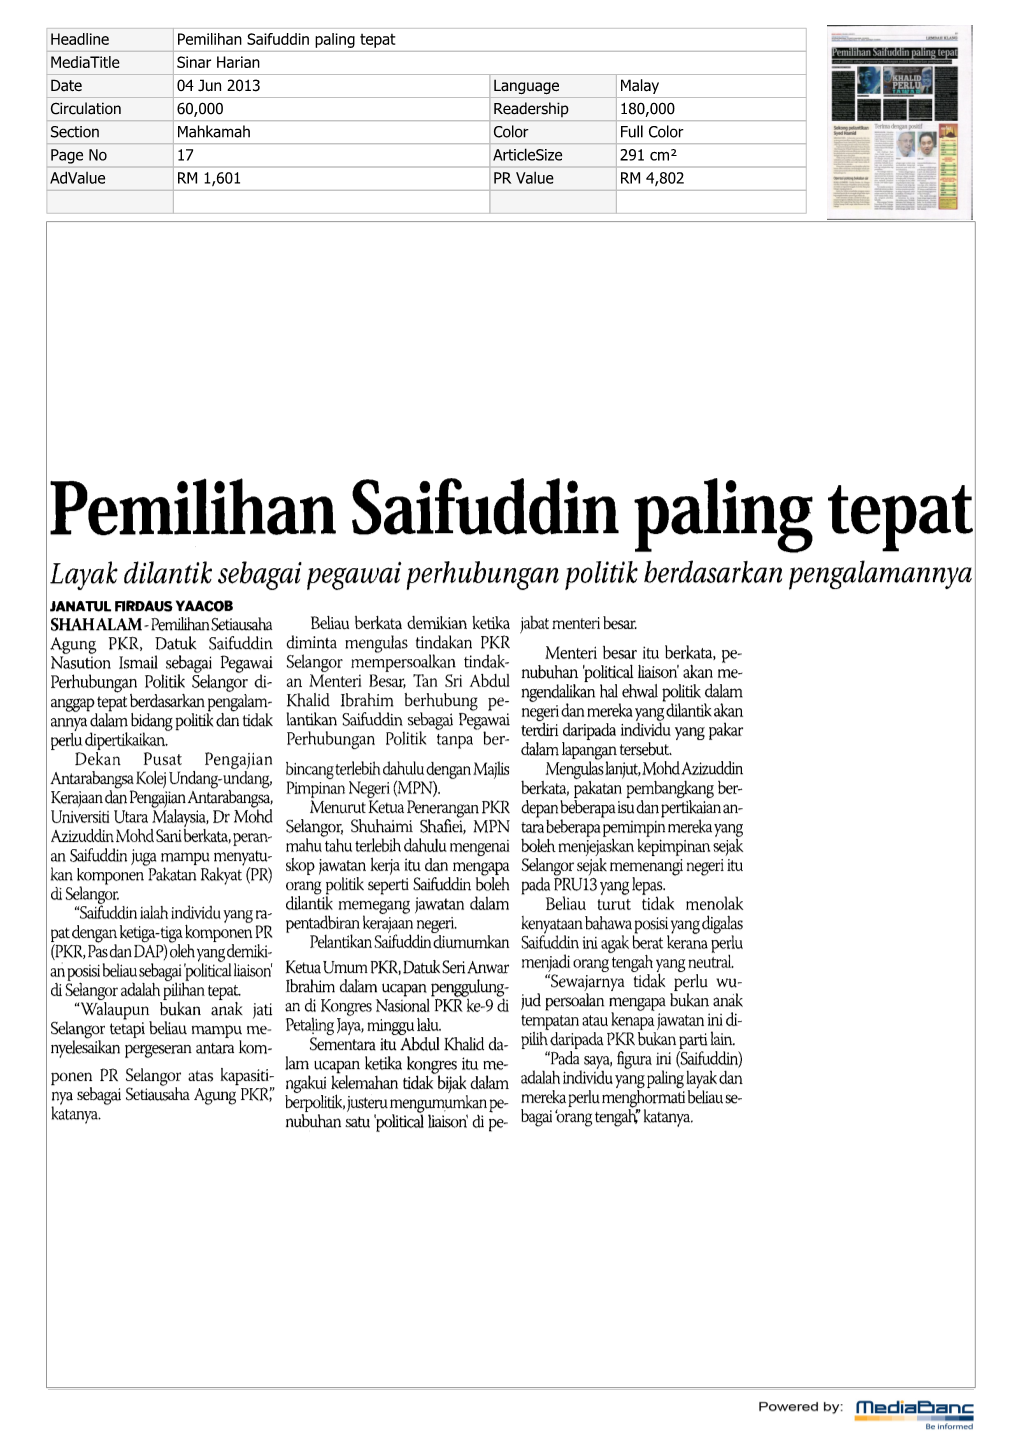 Pemilihan Saifuddin Paling Tepat